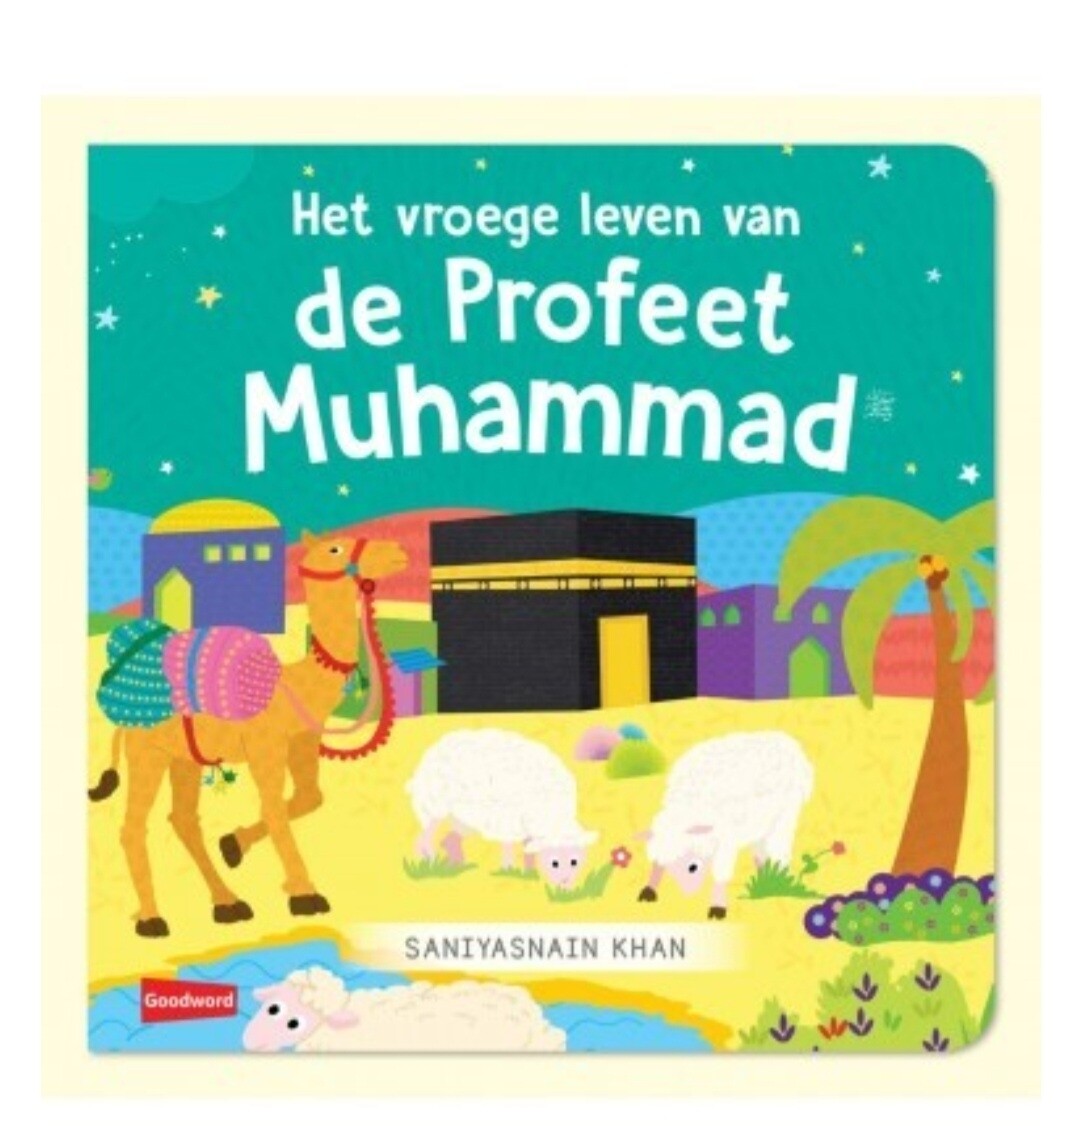 Het vroege leven van de Profeet Muhammad